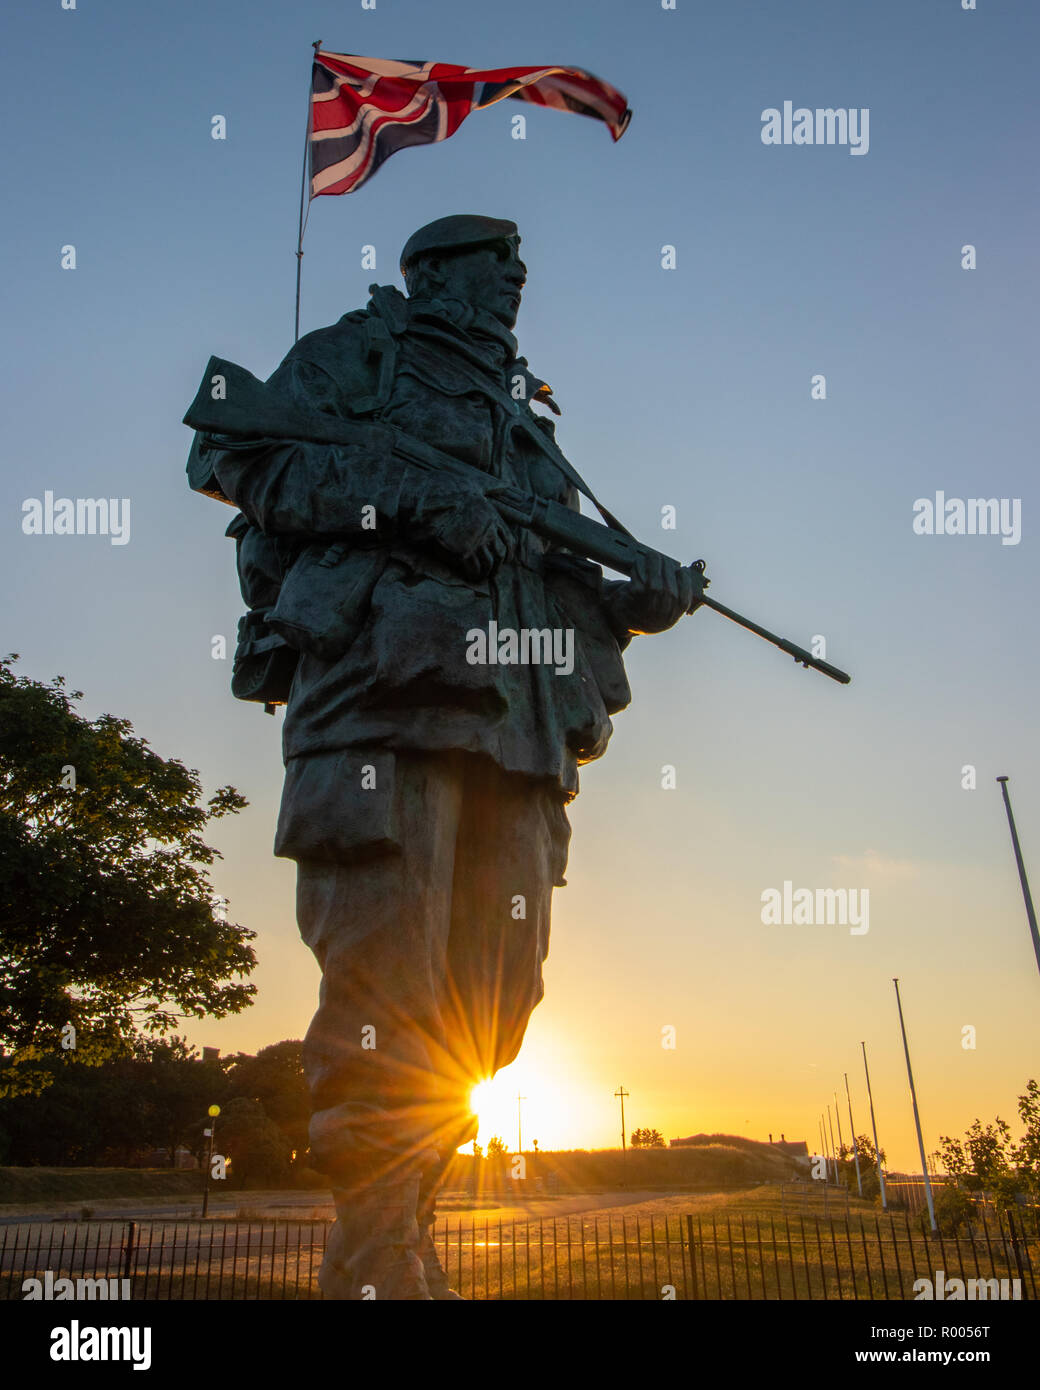 Royal Marine statua anche noto al yomper un omaggio al Royal Marines che ha combattuto nella guerra delle Falkland, situato presso il Royal Marines Museum Foto Stock